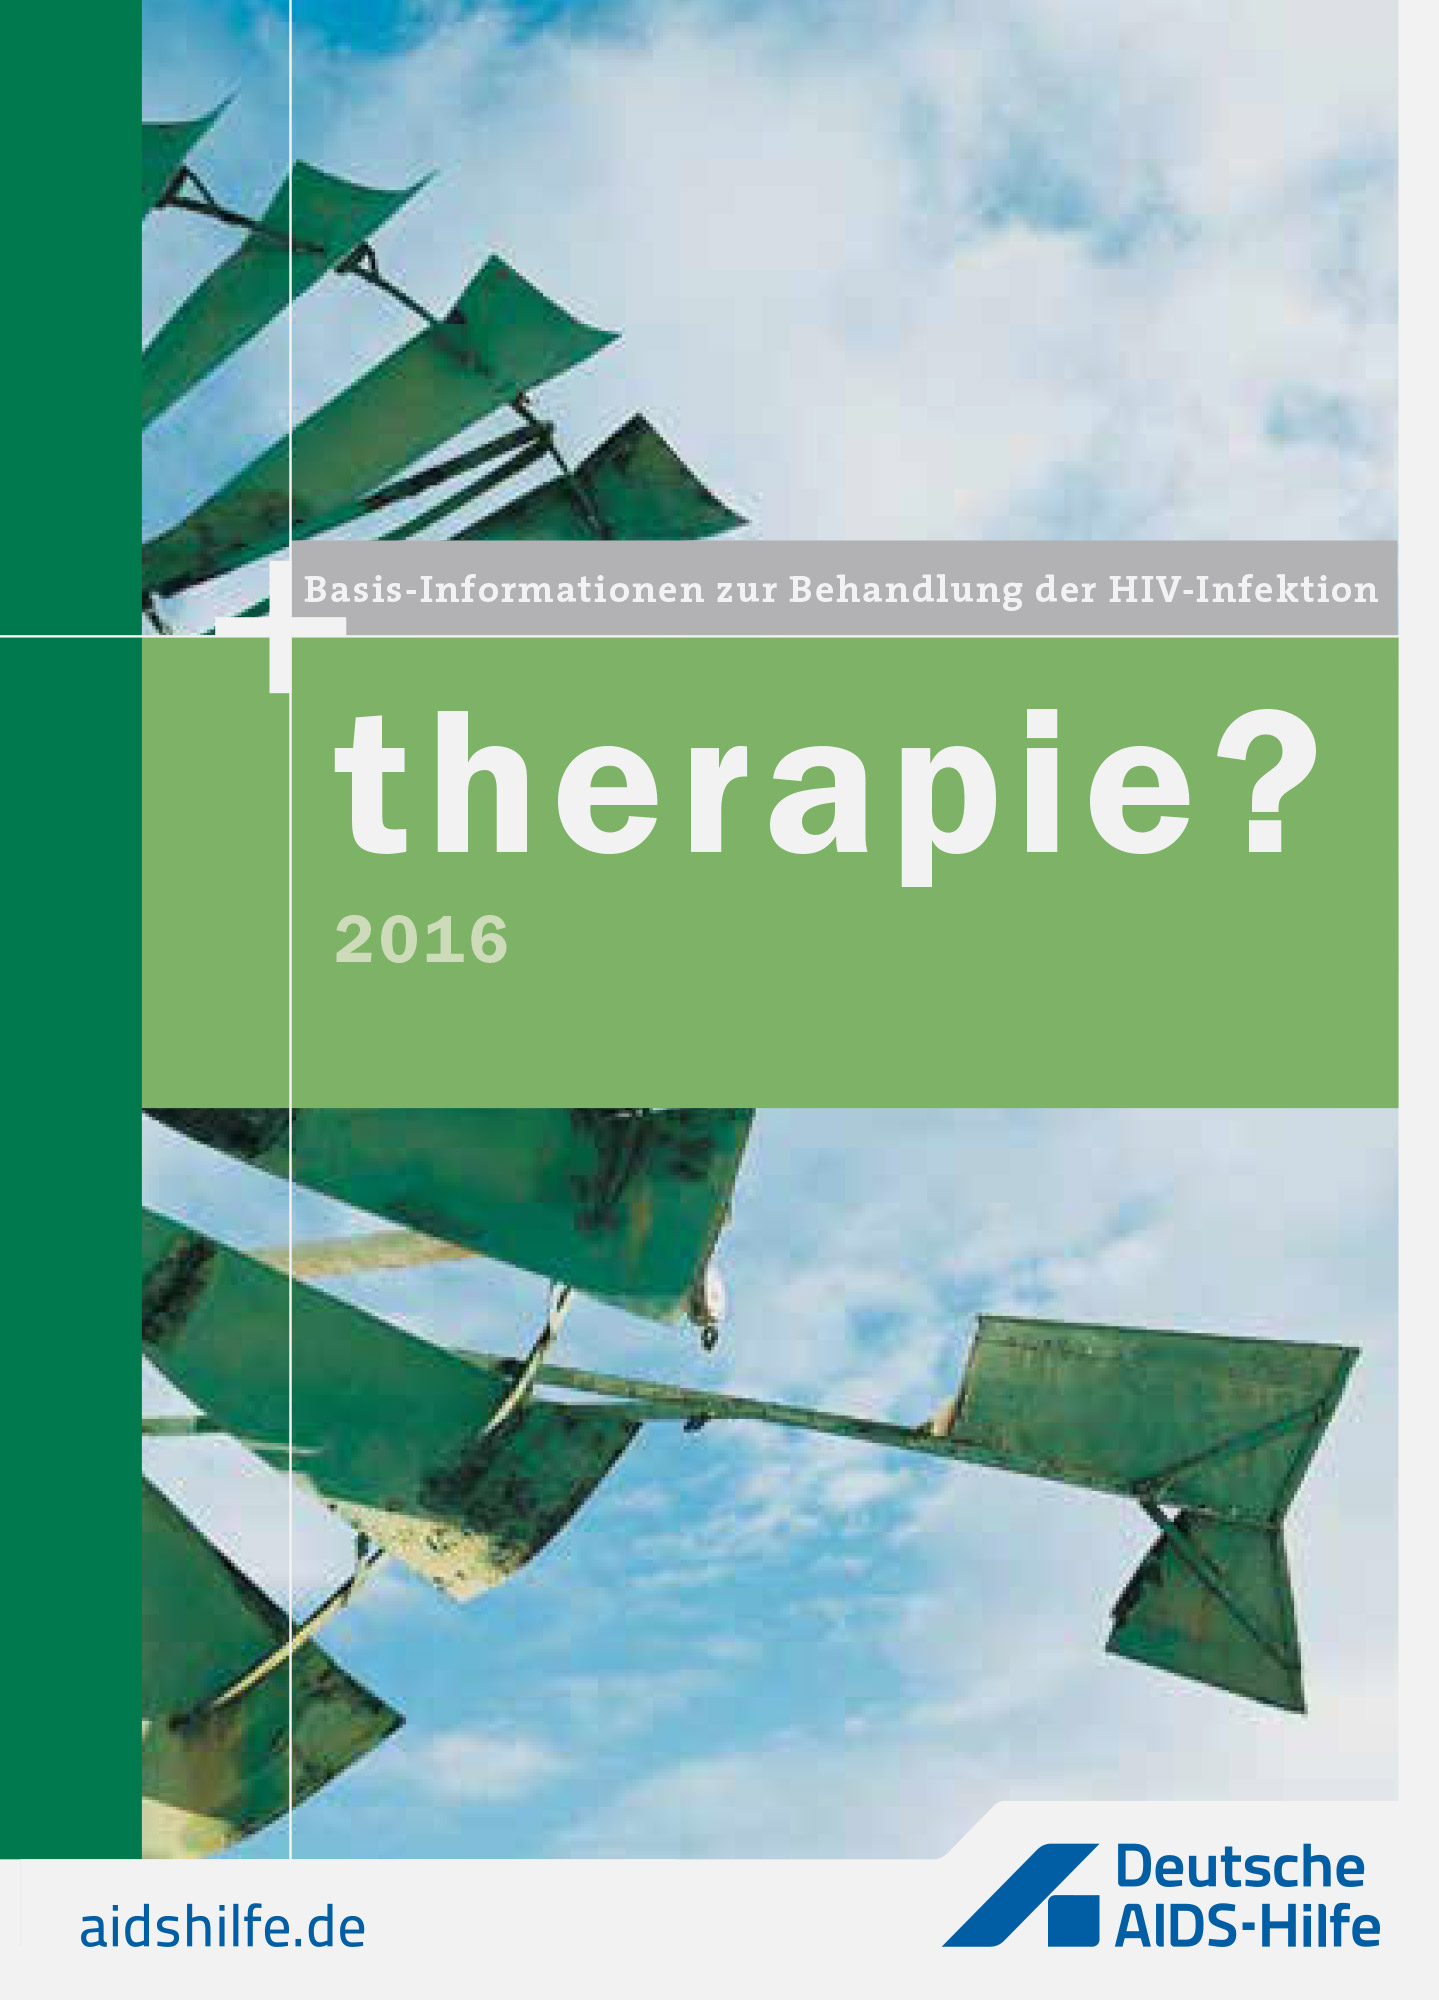 Titelseite der Broschüre "therapie? - Basisinformationen zur Behandlung der HIV-Infektion"